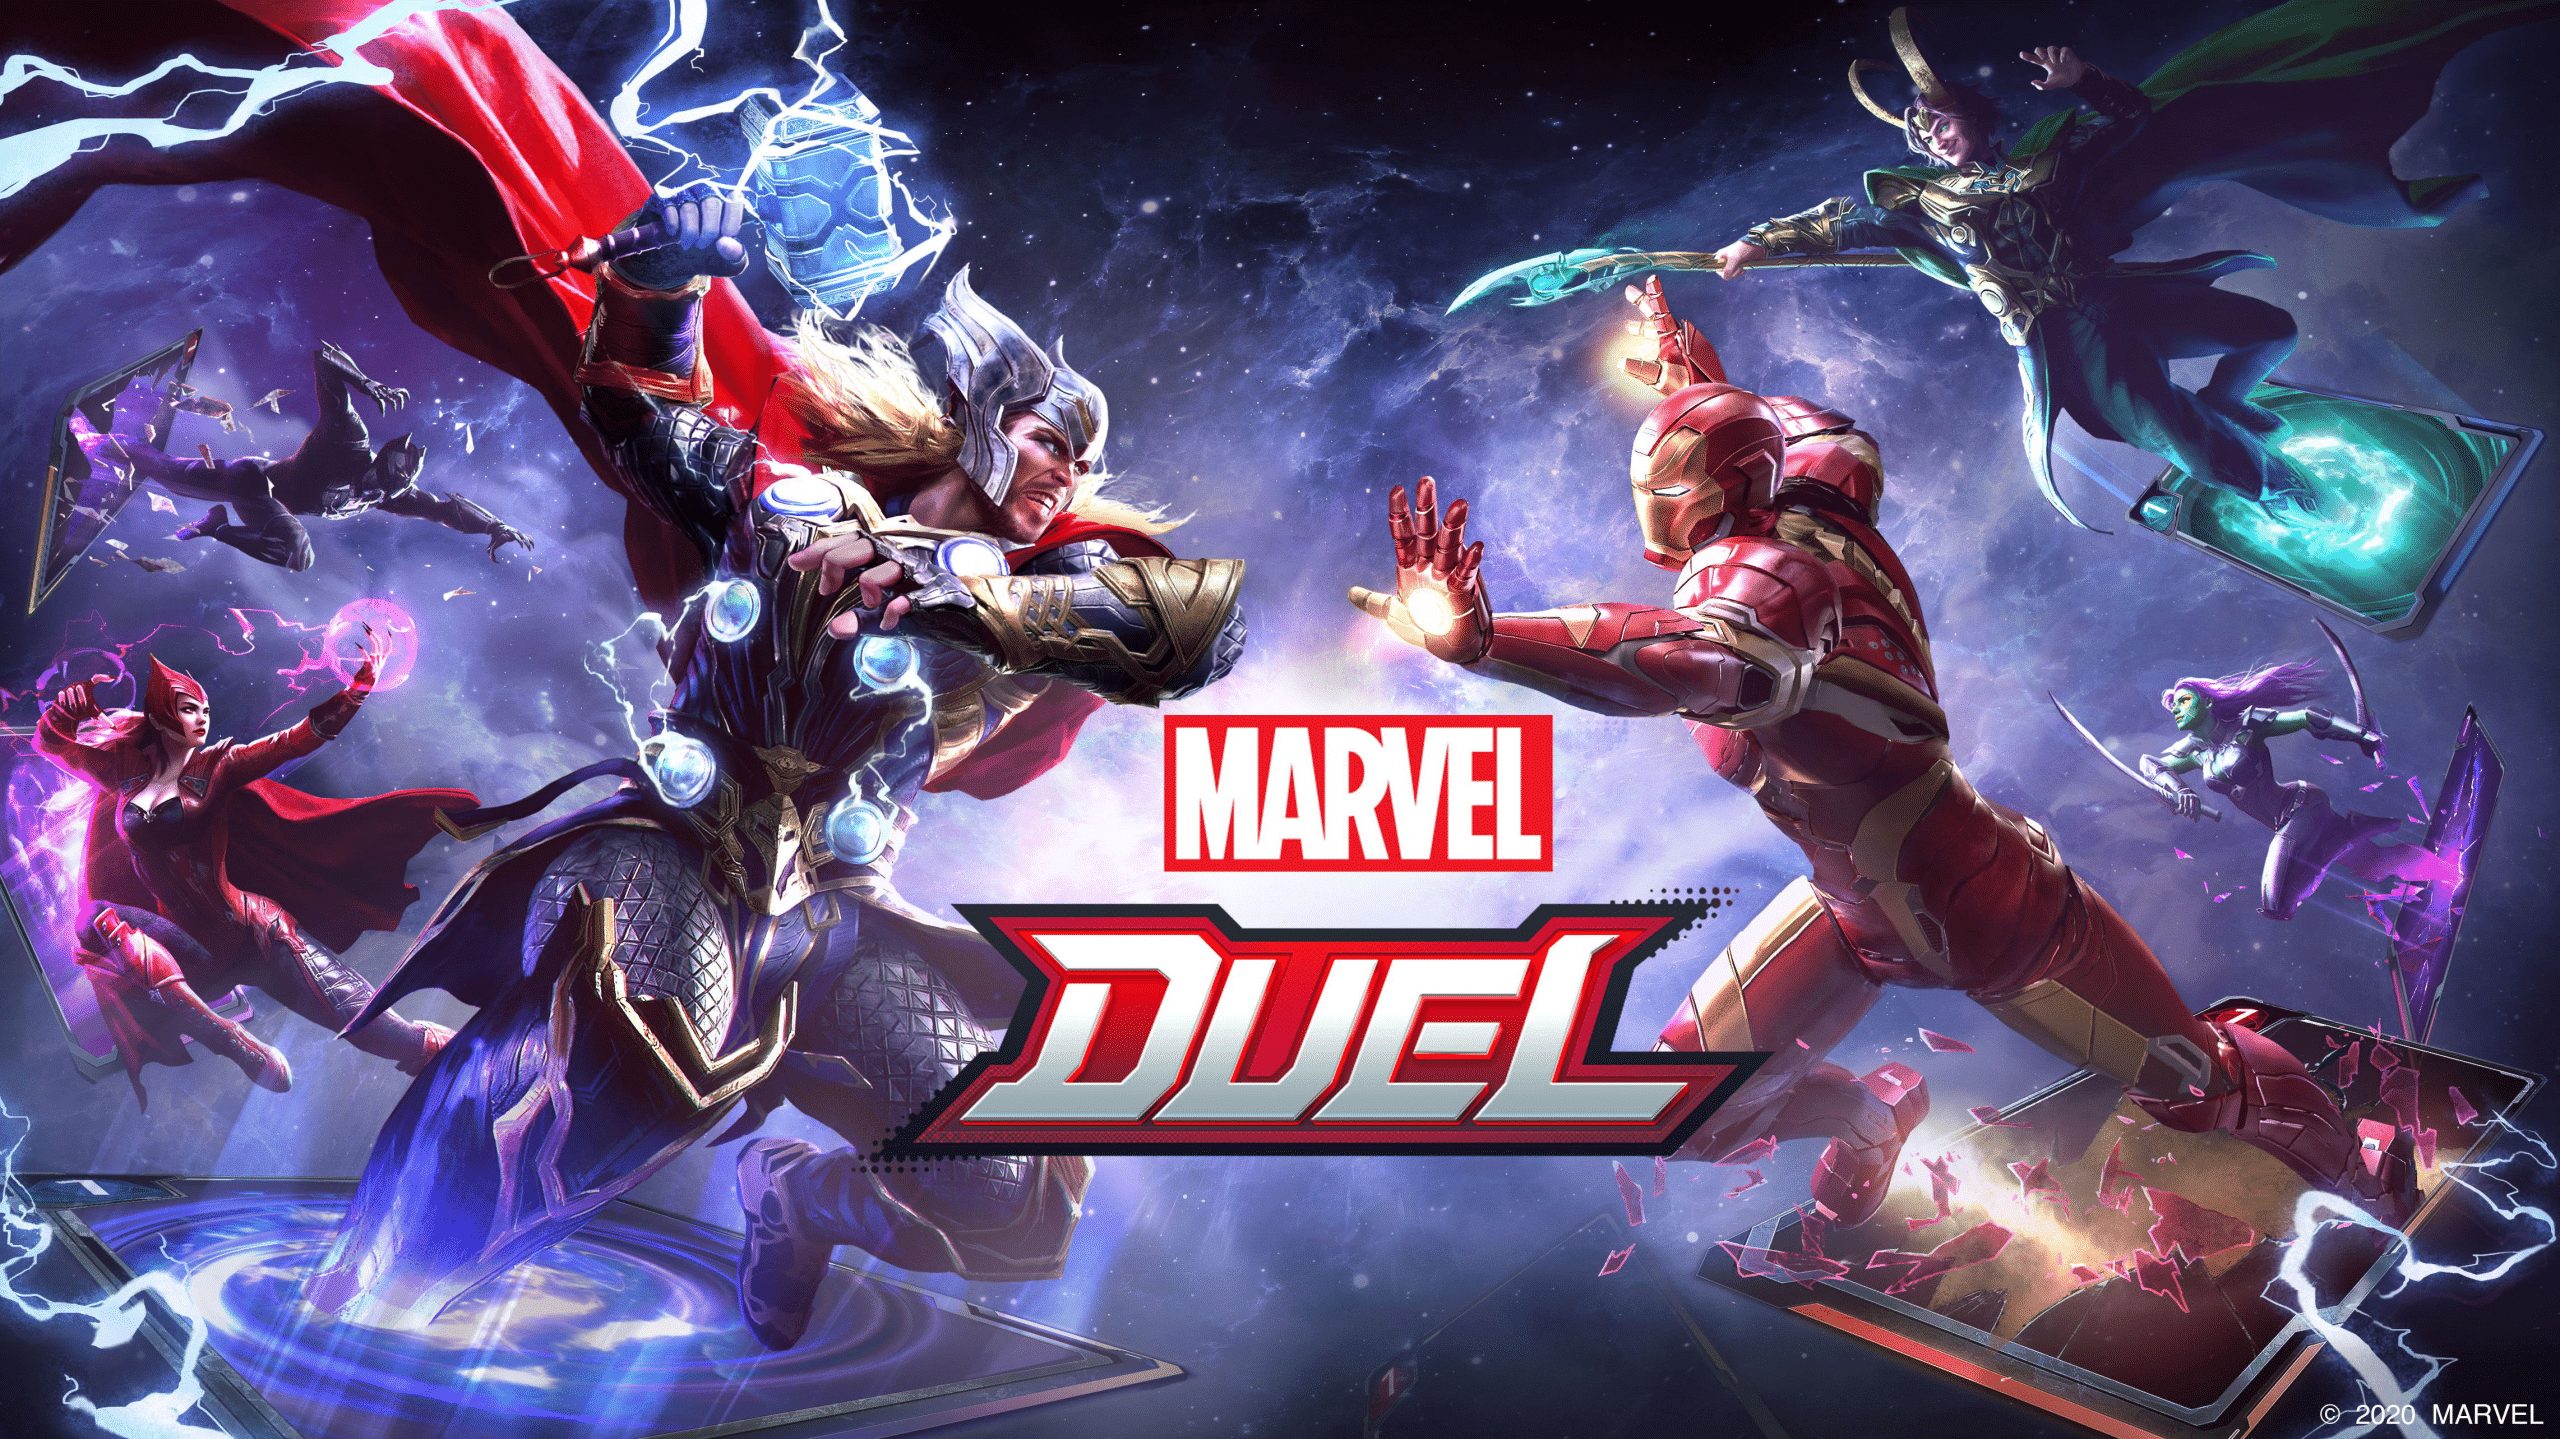 MARVEL Duel เกมมือถือแนวการ์ดเกม จาก NetEase เตรียมเปิด CBT วันที่ 19 มี.ค. นี้